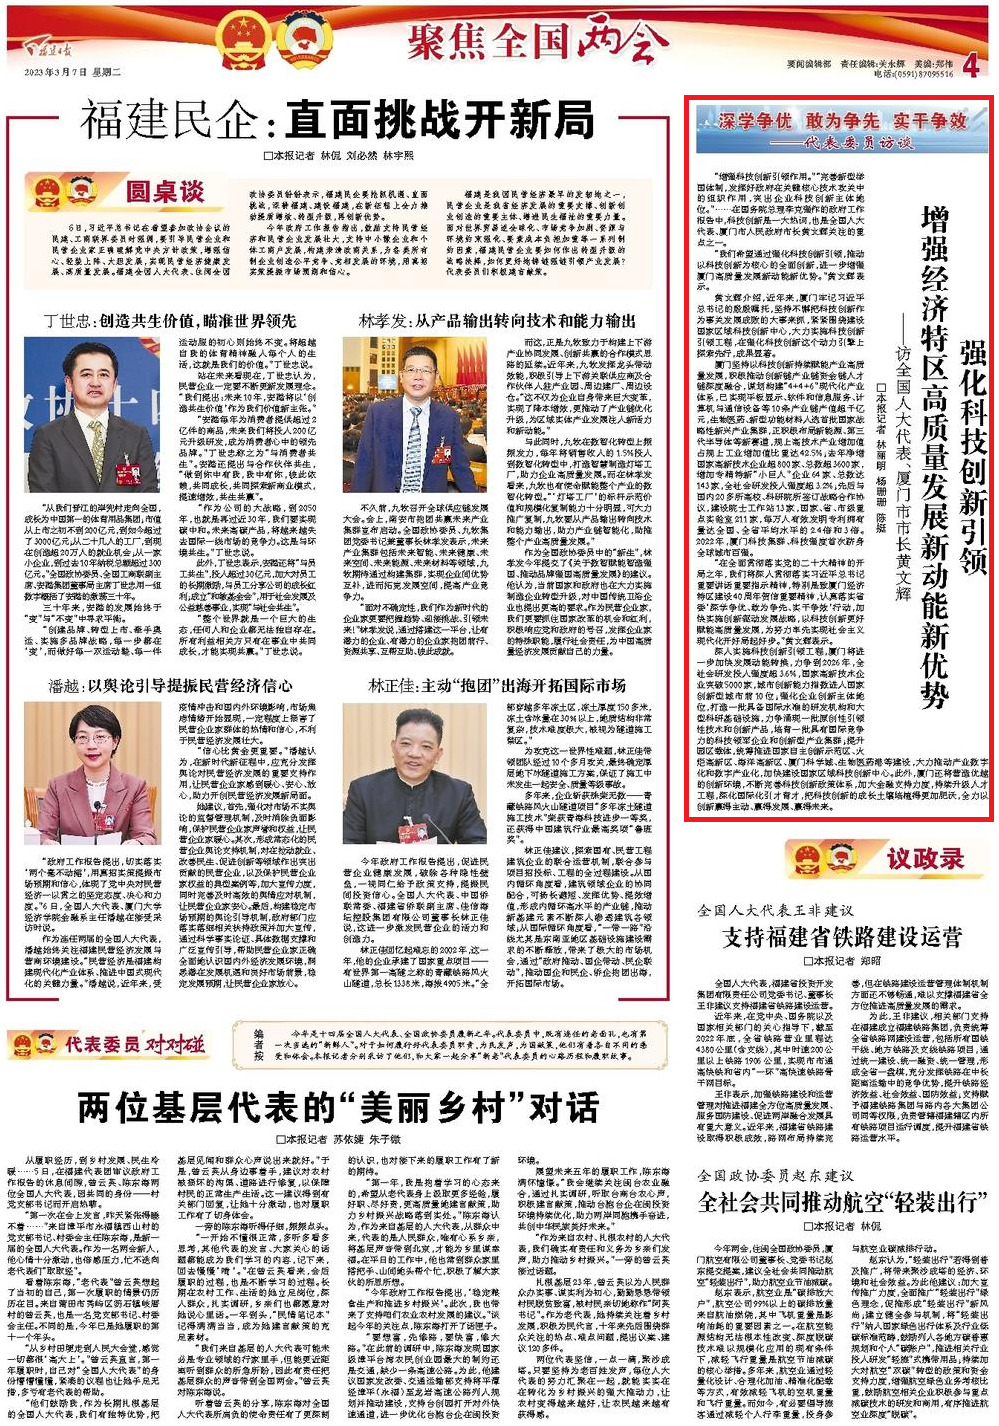 福建日报专访全国人大代表、厦门市市长黄文辉